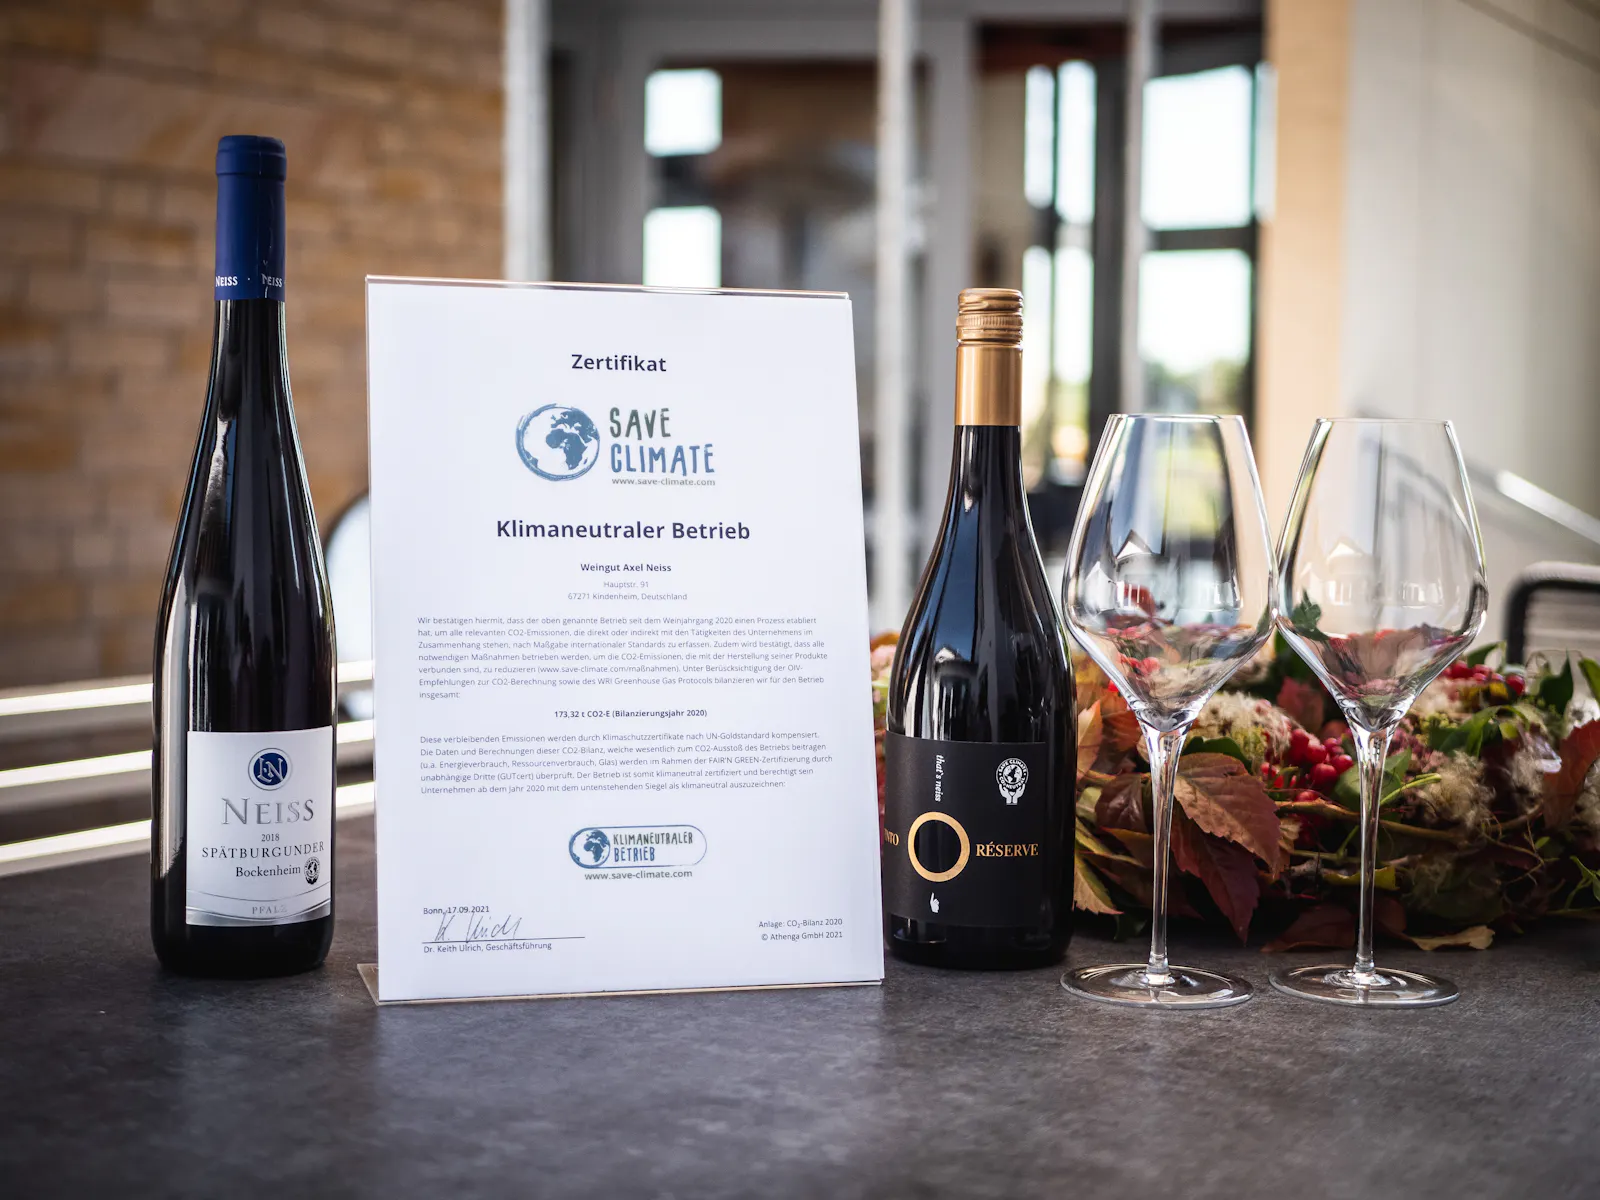 Das Weingut Neiss aus der Pfalz hat auf einem Tisch das Zertifikat "Klimaneutraler Betrieb" neben zwei Weinflaschen gestellt.